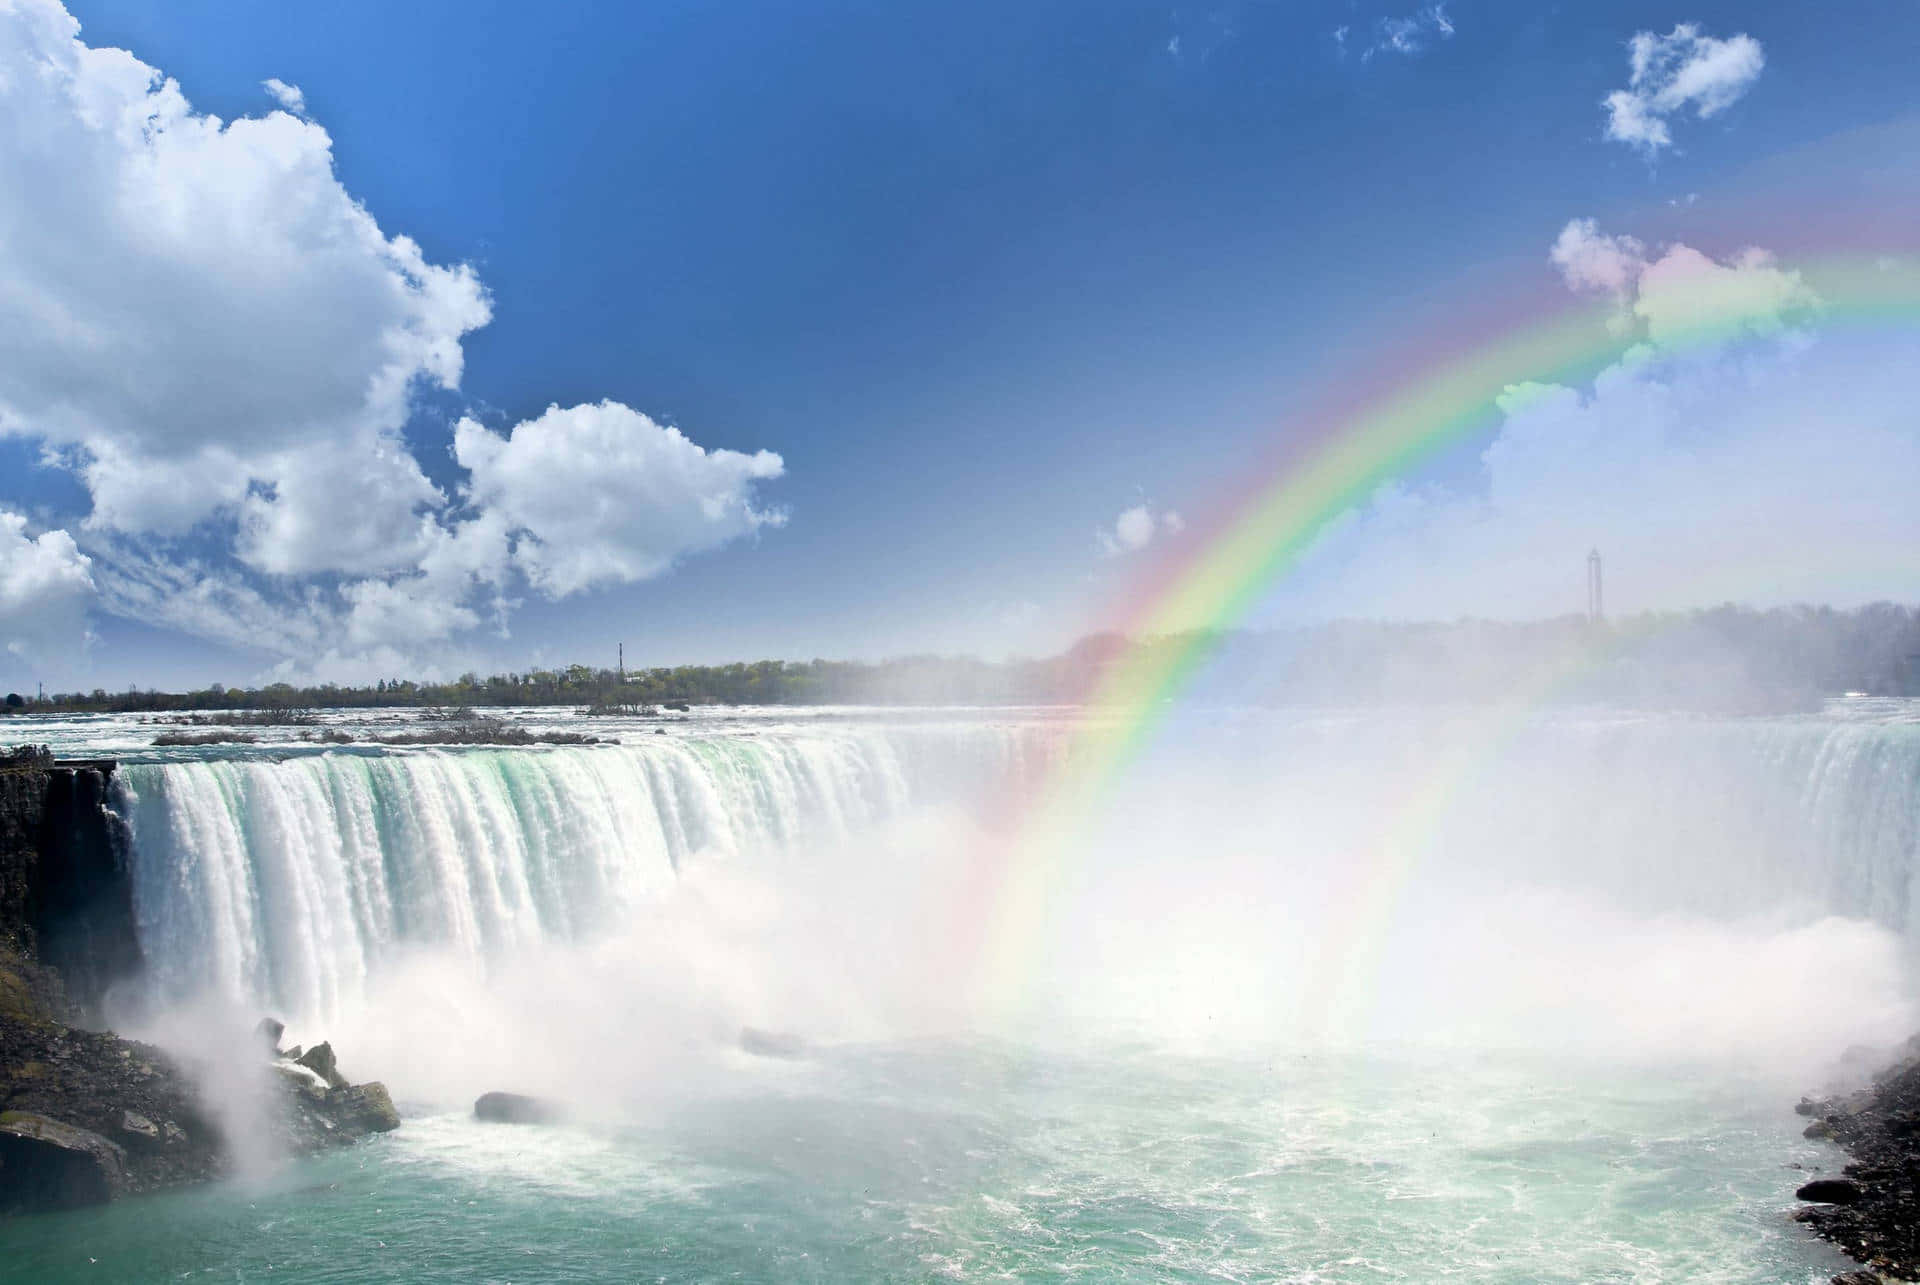 Niagarafallenmed En Regnbåge På Himlen.